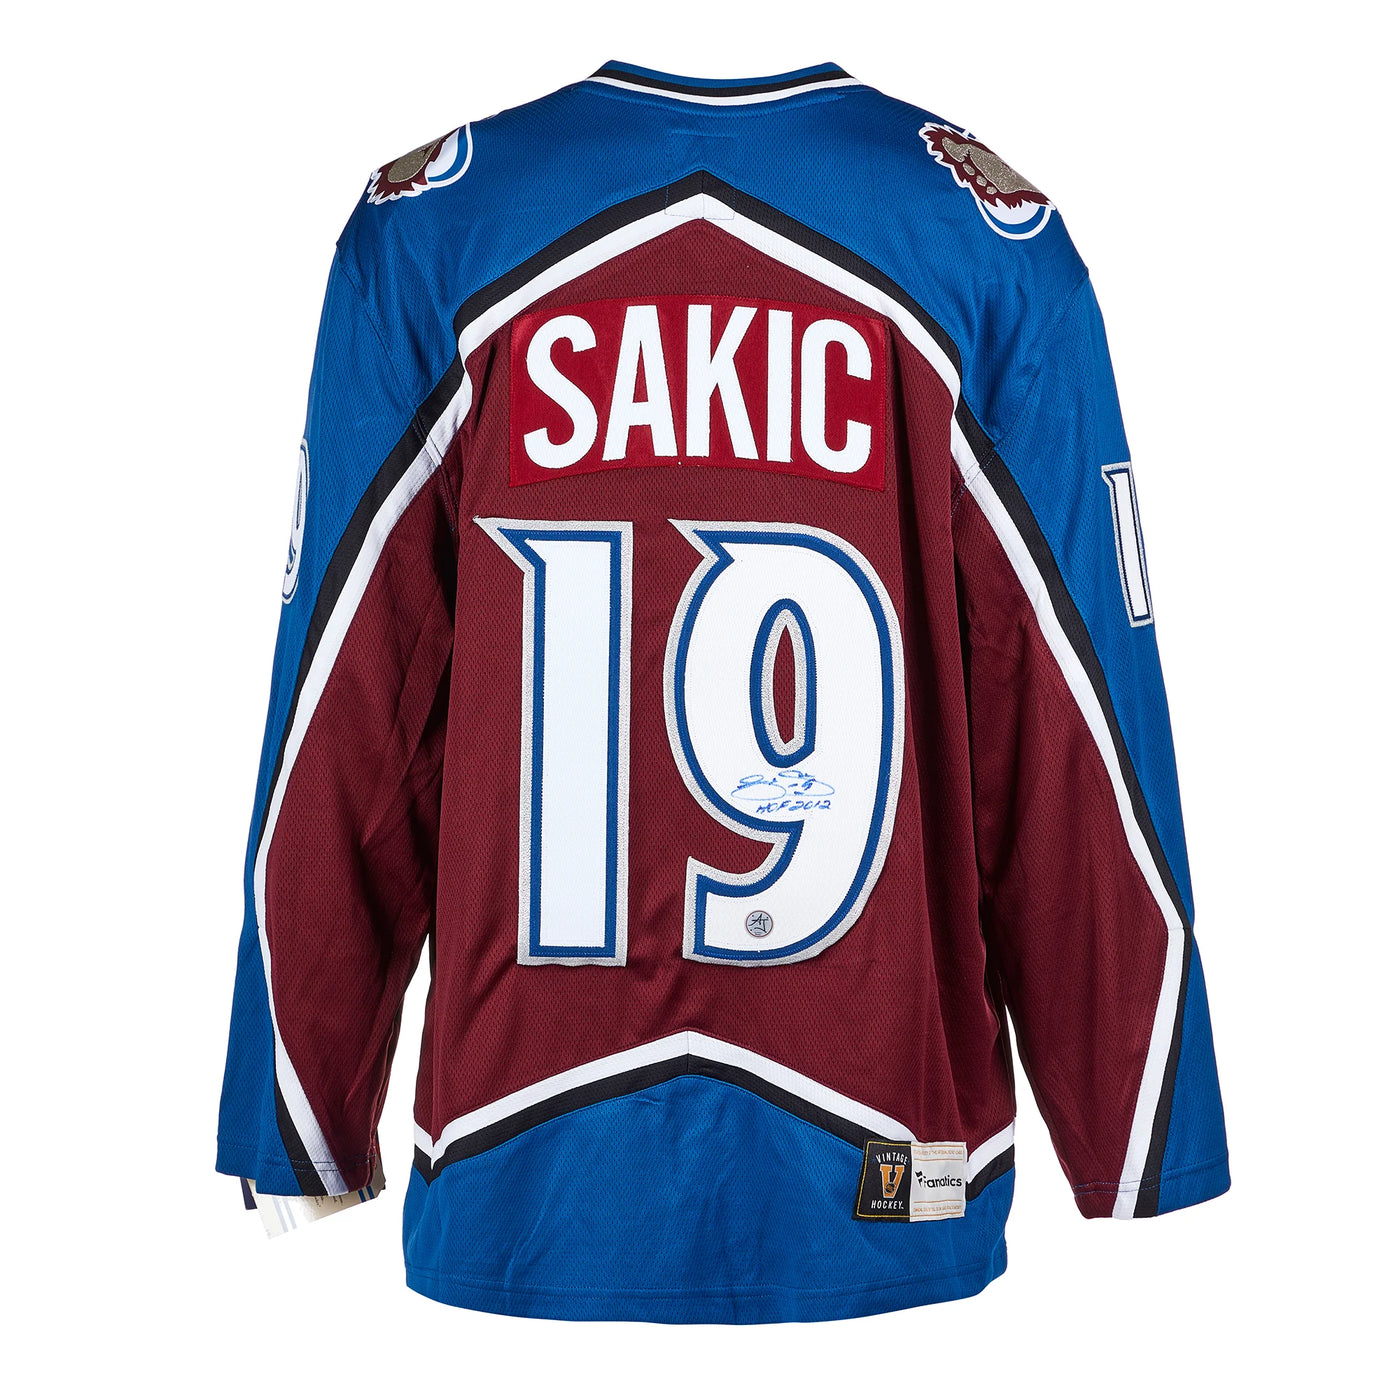 Joe Sakic Colorado Avalanche Autograhed 2001 Stanley Cup Fanatics Jersey